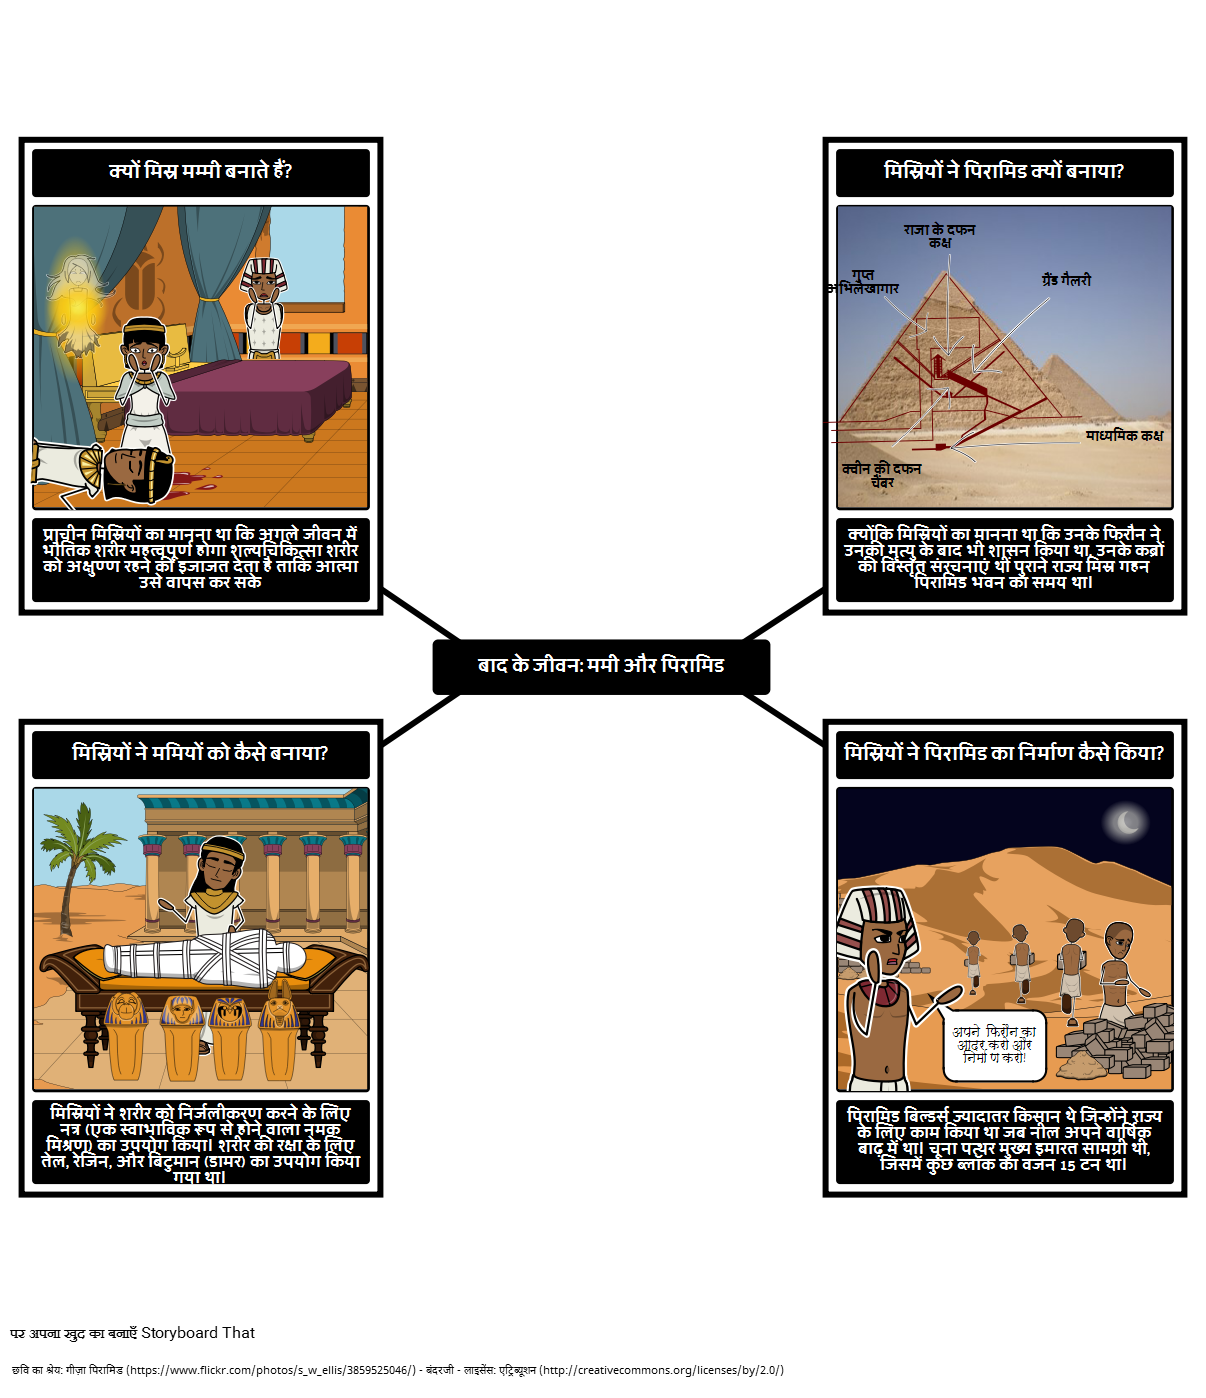 प्राचीन मिस्र के लिए परिचय - ममियों और पिरामिड